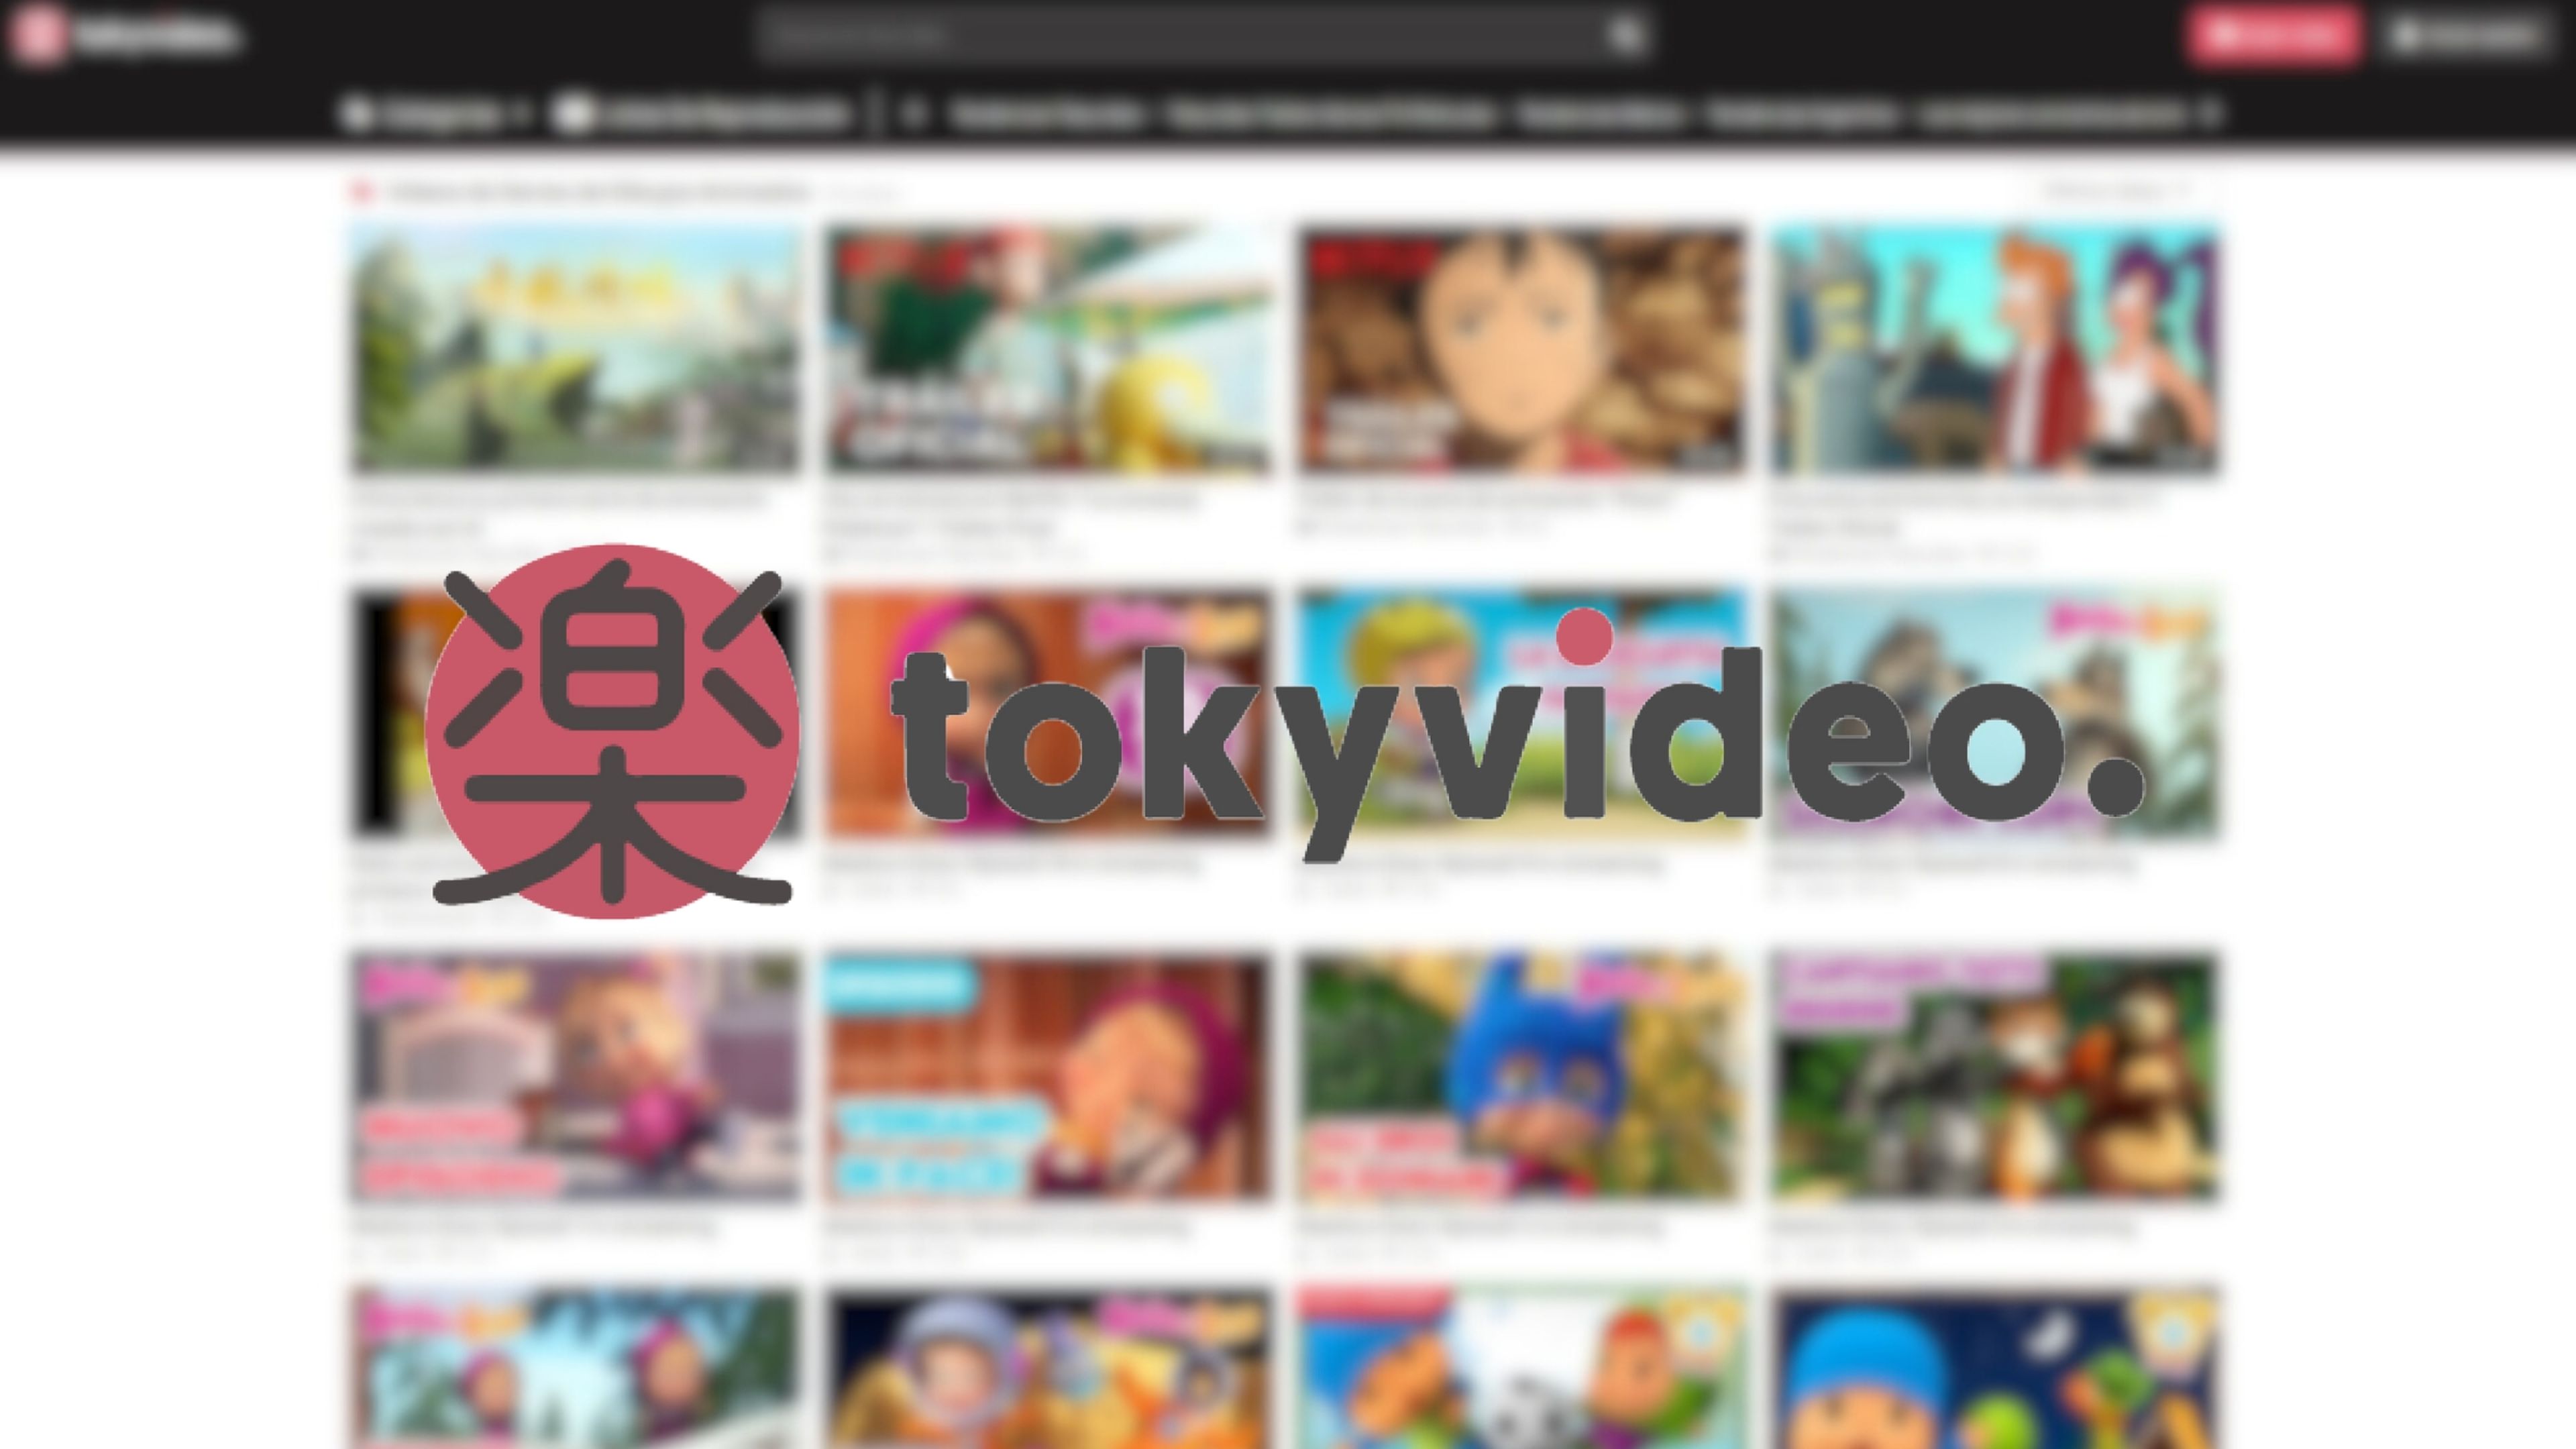 Qué es y cómo funciona Tokyvideo: el YouTube español con series y películas